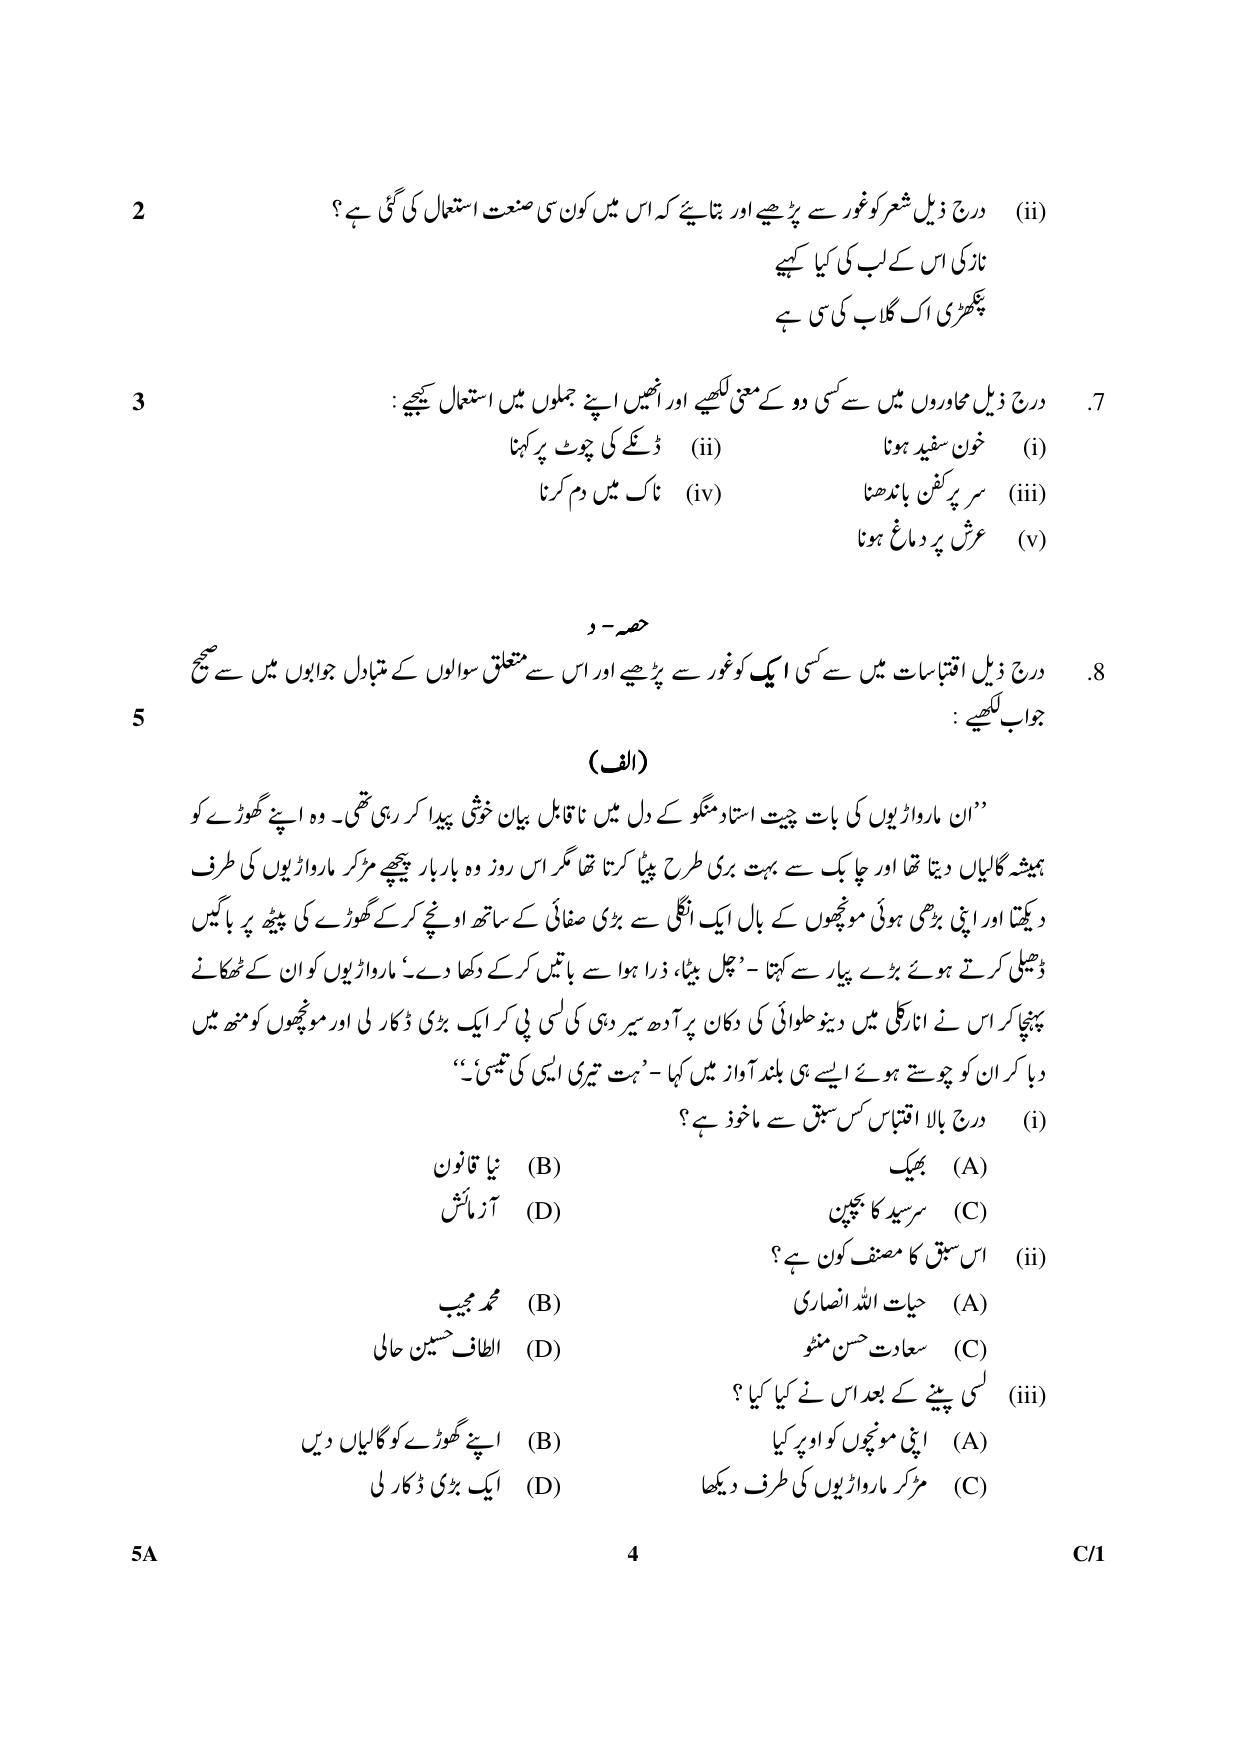 CBSE Class 10 5A Urdu (Course A) 2018 Compartment Question Paper - Page 4